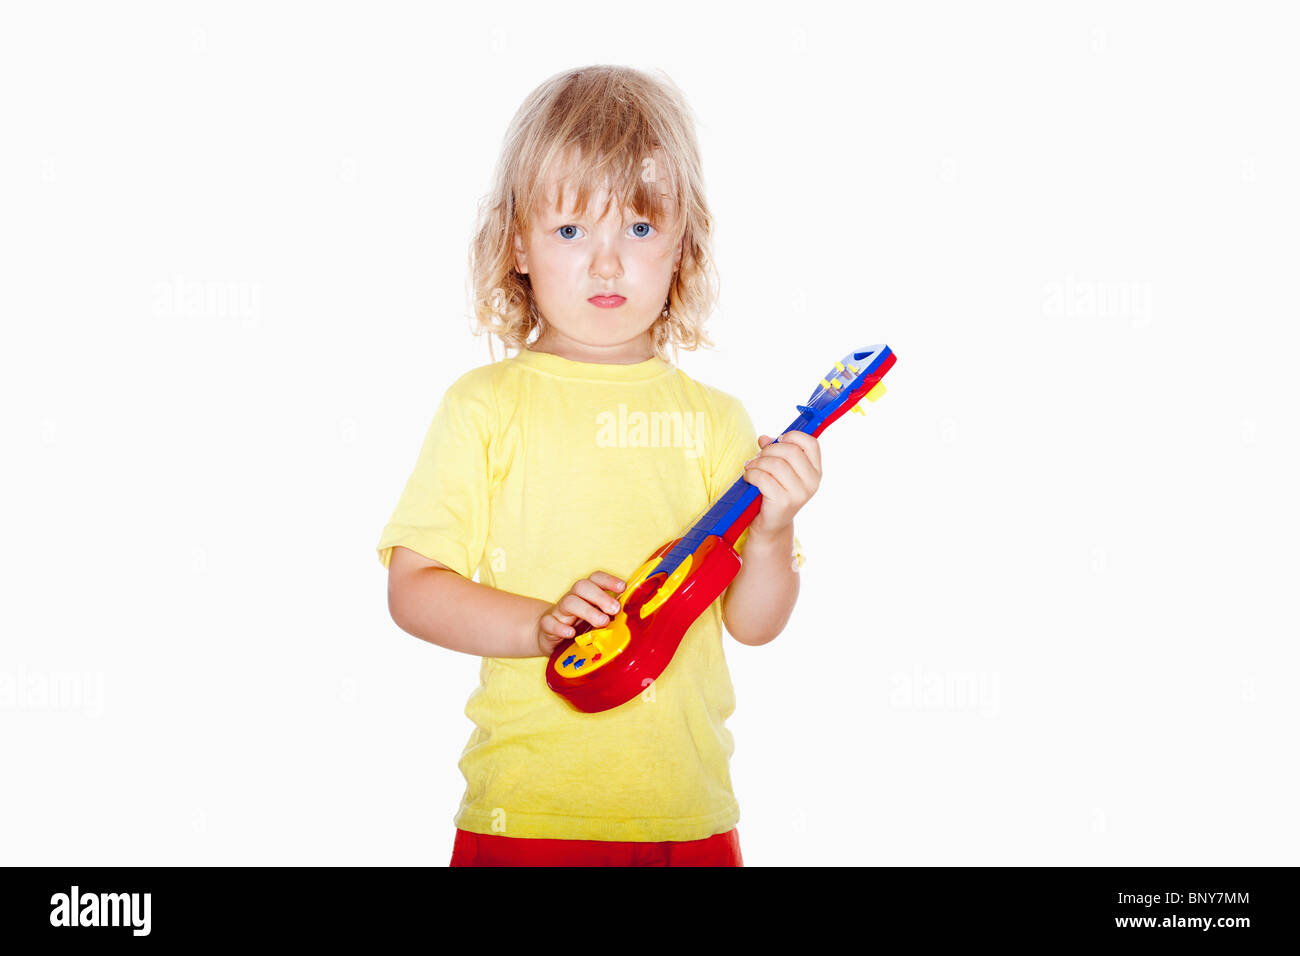 Junge mit langen blonden Haaren spielen mit Spielzeug-Gitarre - isoliert auf weiss Stockfoto